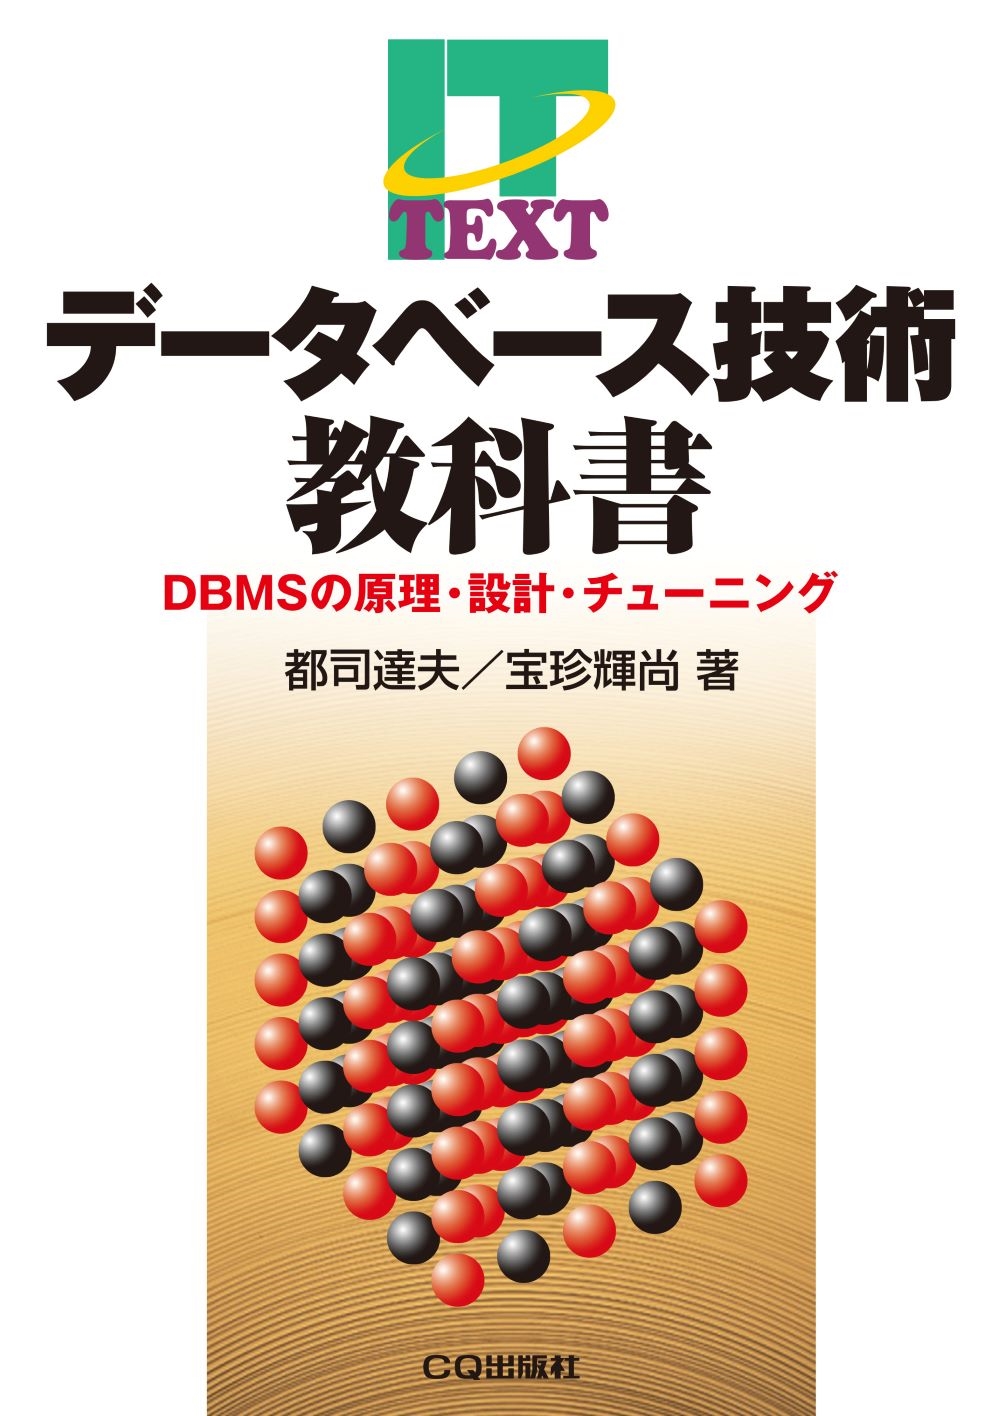 都司達夫/データベース技術教科書 DBMSの原理・設計・チューニング